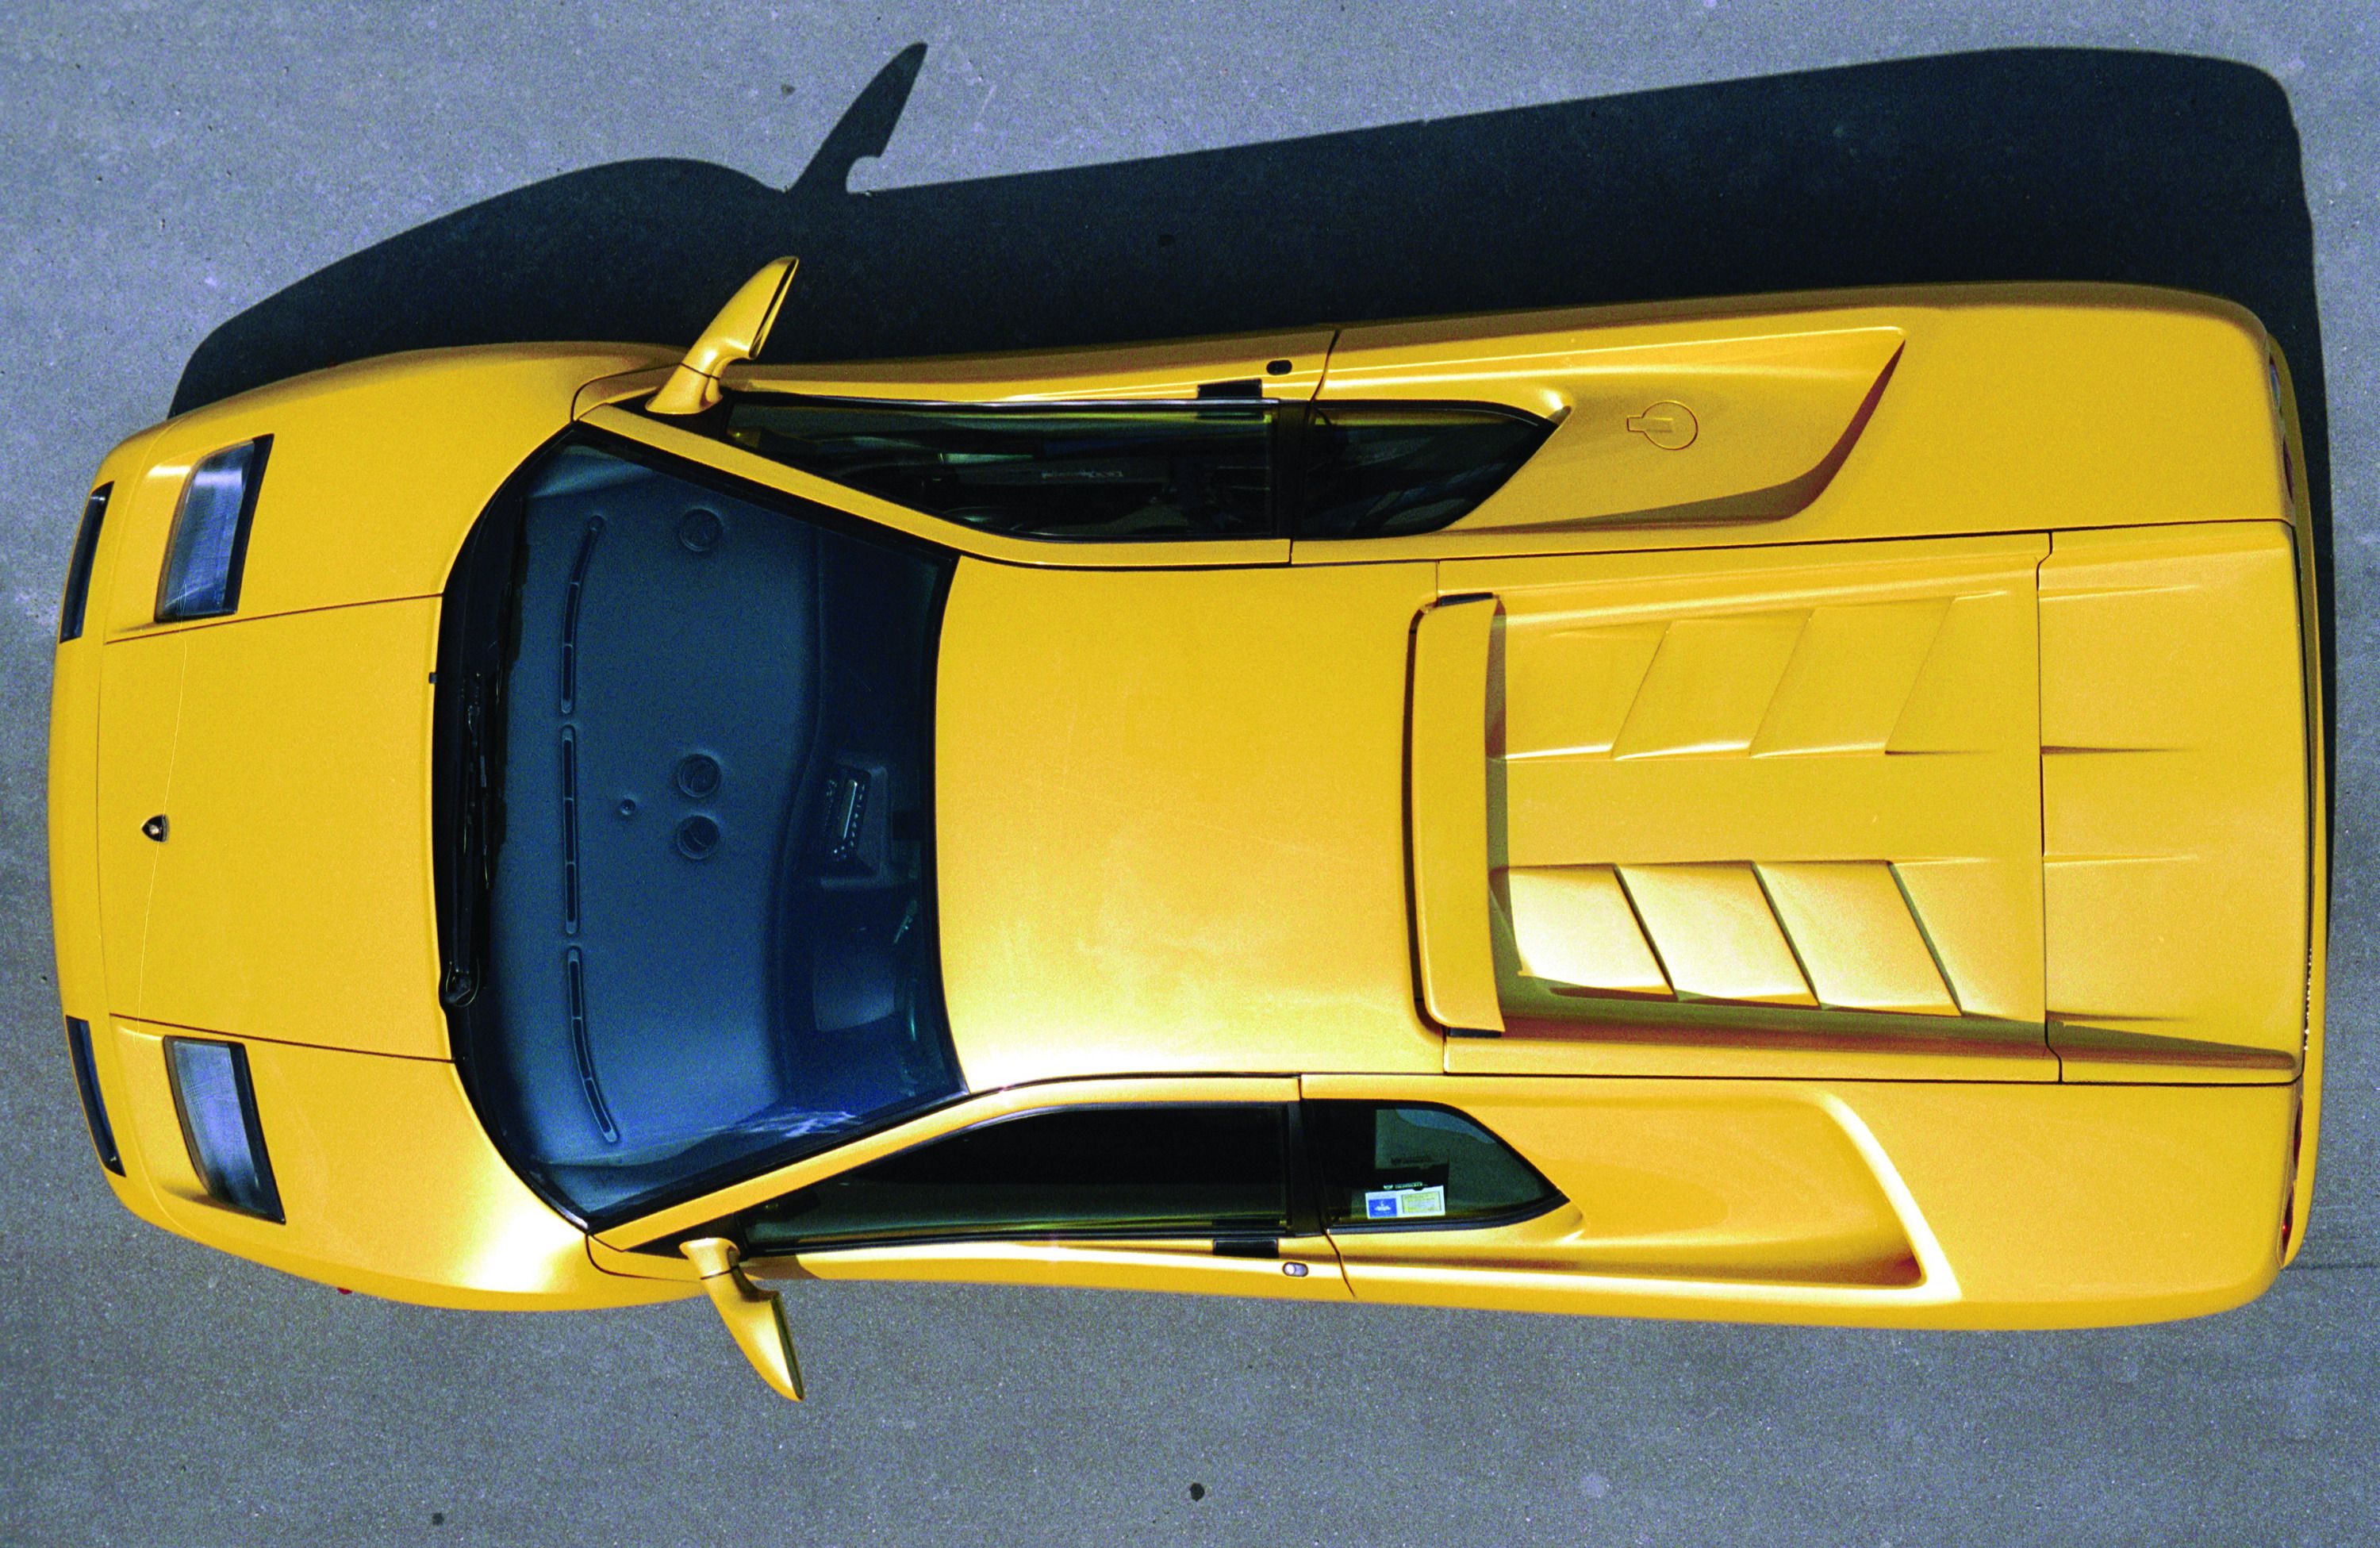 1990 - 2001 Lamborghini Diablo